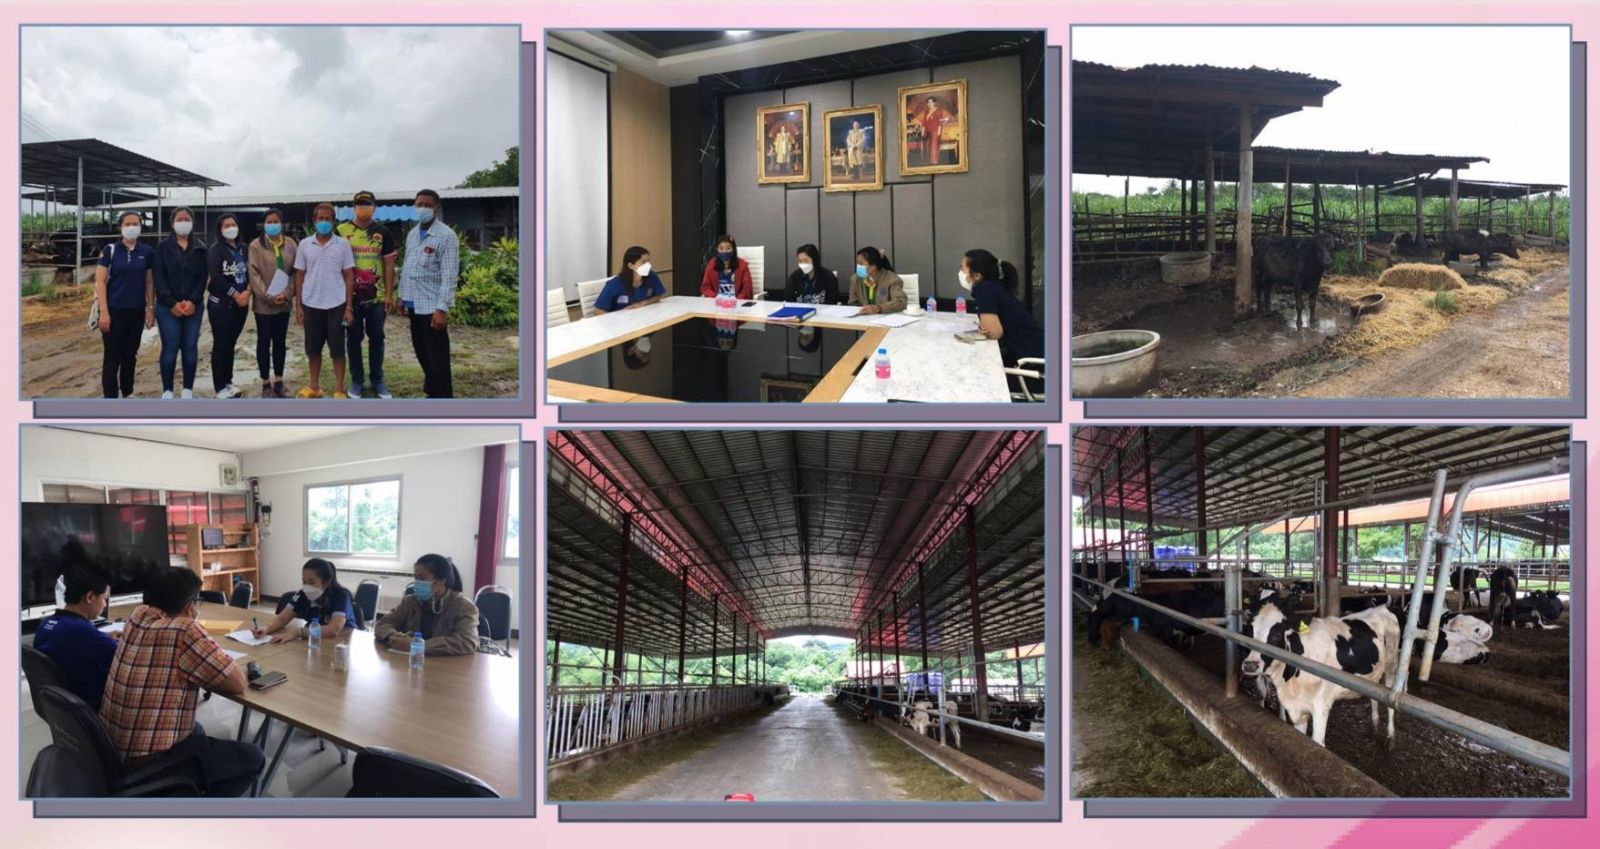 สศท.7 ลงพื้นที่ติดตามโครงการสร้างความมั่นคงด้านอาหารโคนม รองรับการเปิดเสรีทางการค้า (FTA) ในพื้นที่จังหวัดลพบุรี และโครงการจัดตั้งฟาร์มโคนมประสิทธิภาพสูง (Thai – Denmark Smart Daily Farm) ในพื้นที่จังหวัดสระบุรี